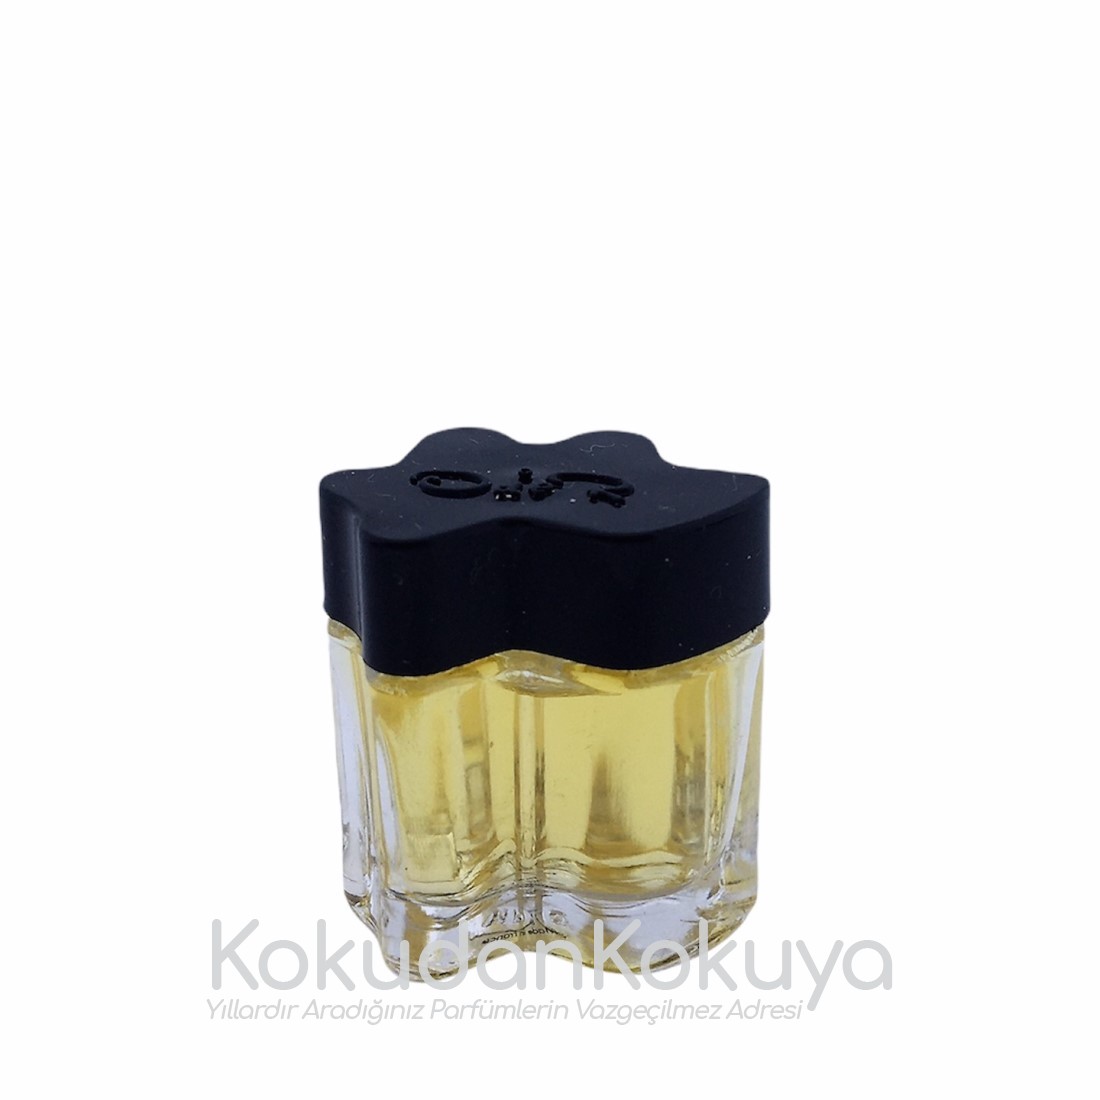 OSCAR de la RENTA Oscar for Women (Vintage) Parfüm Kadın 4ml Minyatür (Mini Perfume) 